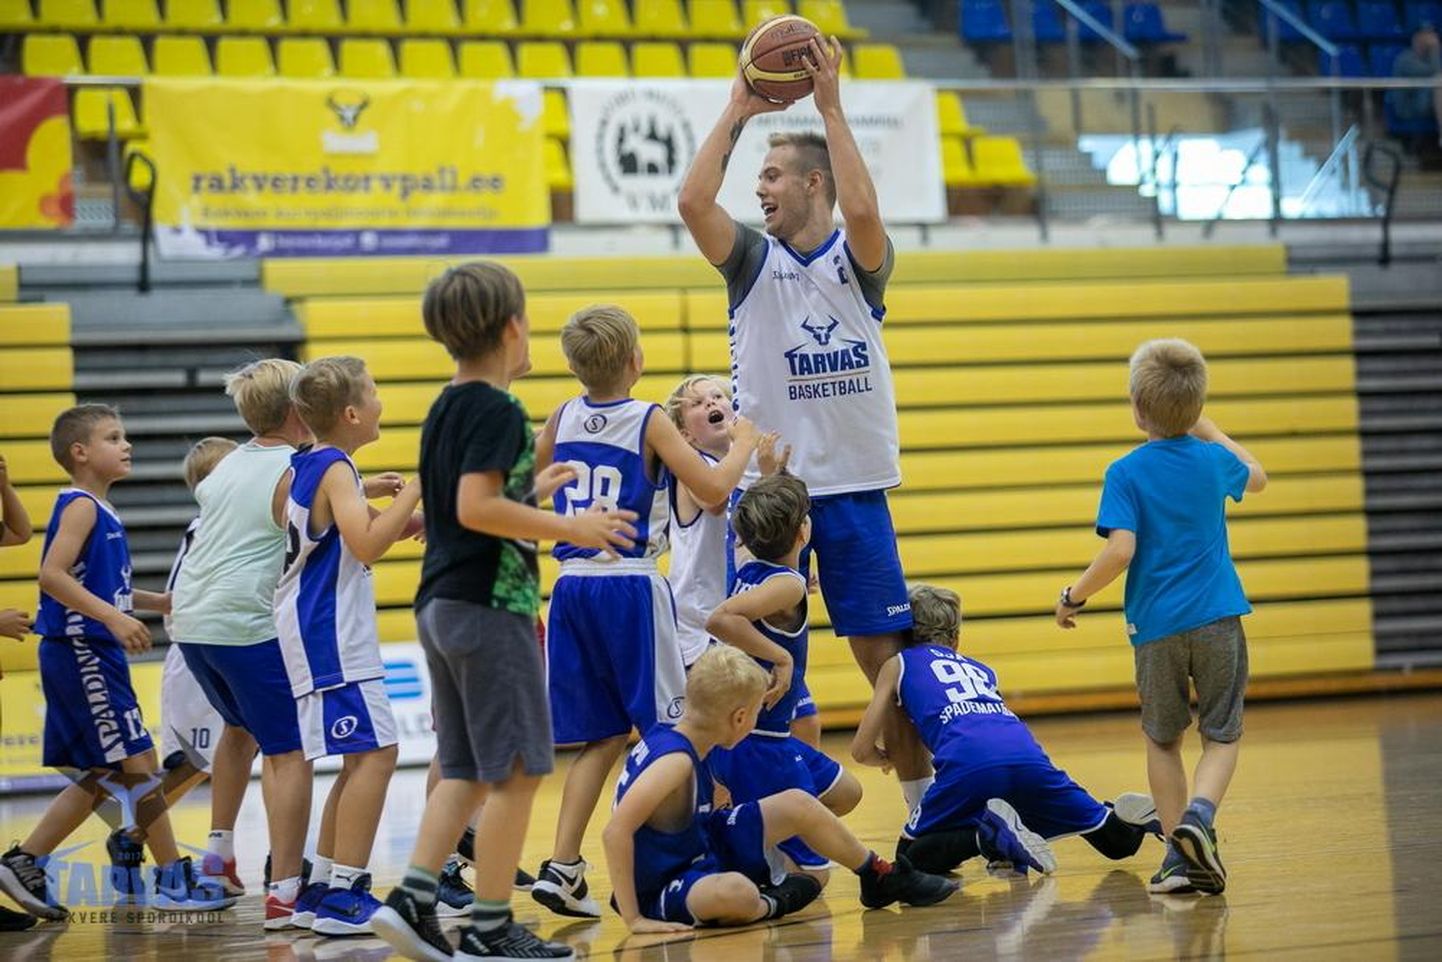 Rakvere spordihallis on selle nädala esimesel kolmel päeval koos hulk lapsi, kes teevad esmatutvust korvpalliga.